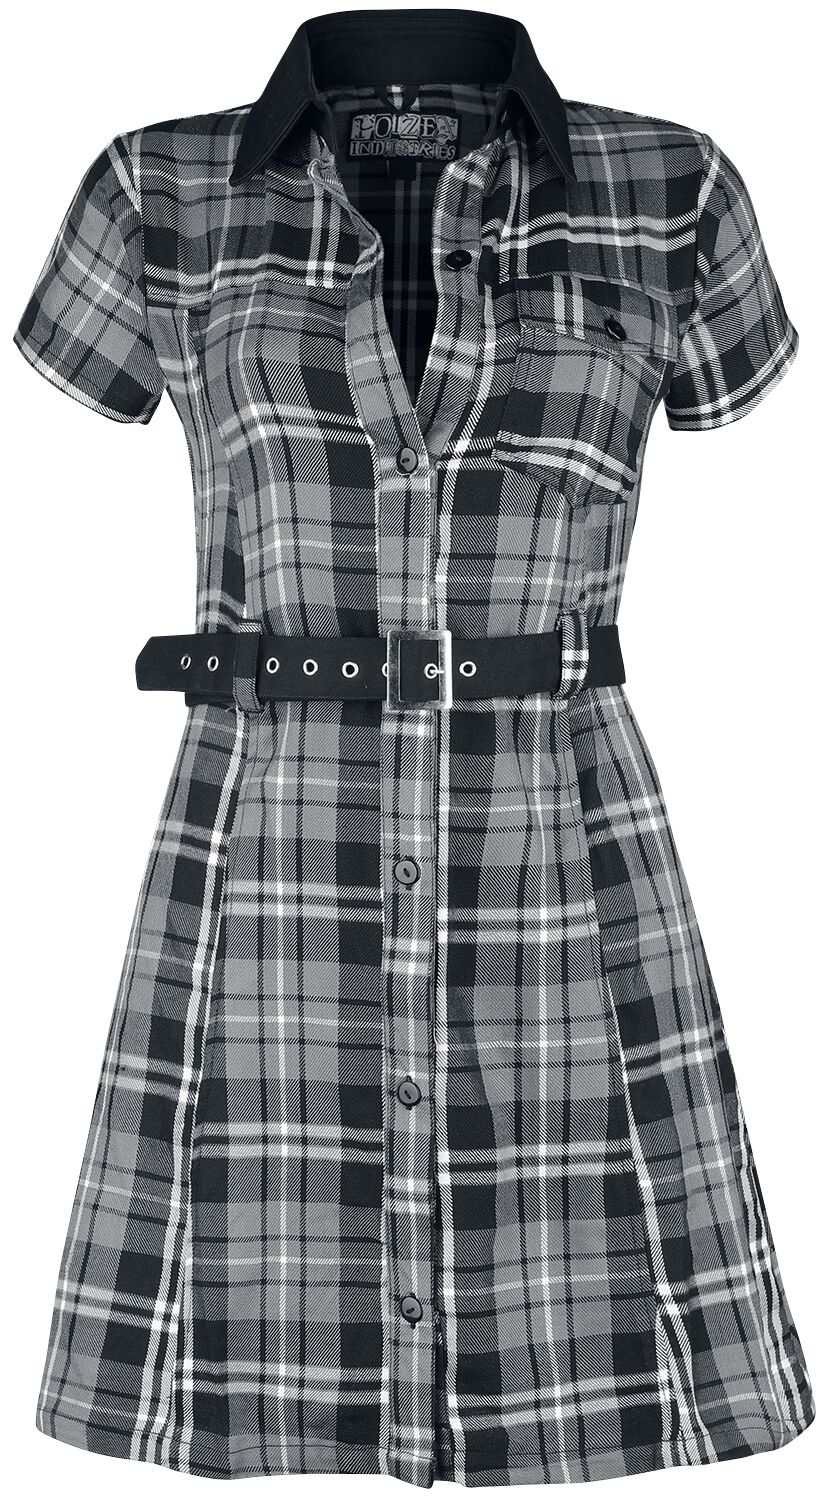 Poizen Industries Kurzes Kleid - Adelaide Dress - XS bis XL - für Damen - Größe S - schwarz/grau/weiß von Poizen Industries